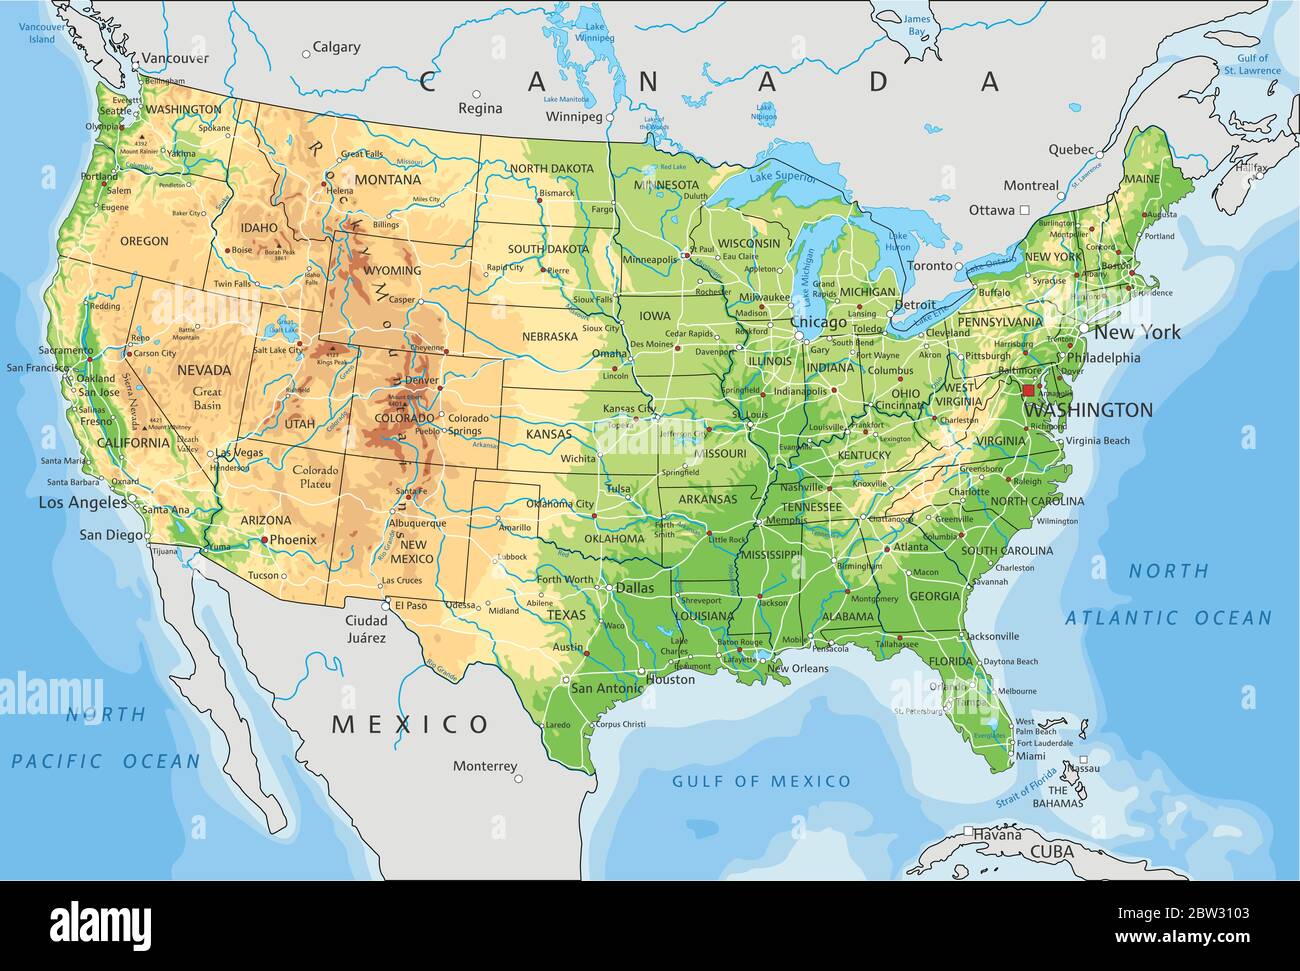 Detaillierte Karte Der Vereinigten Staaten Von Amerika Mit Beschriftung Stock Vektorgrafik Alamy 6962